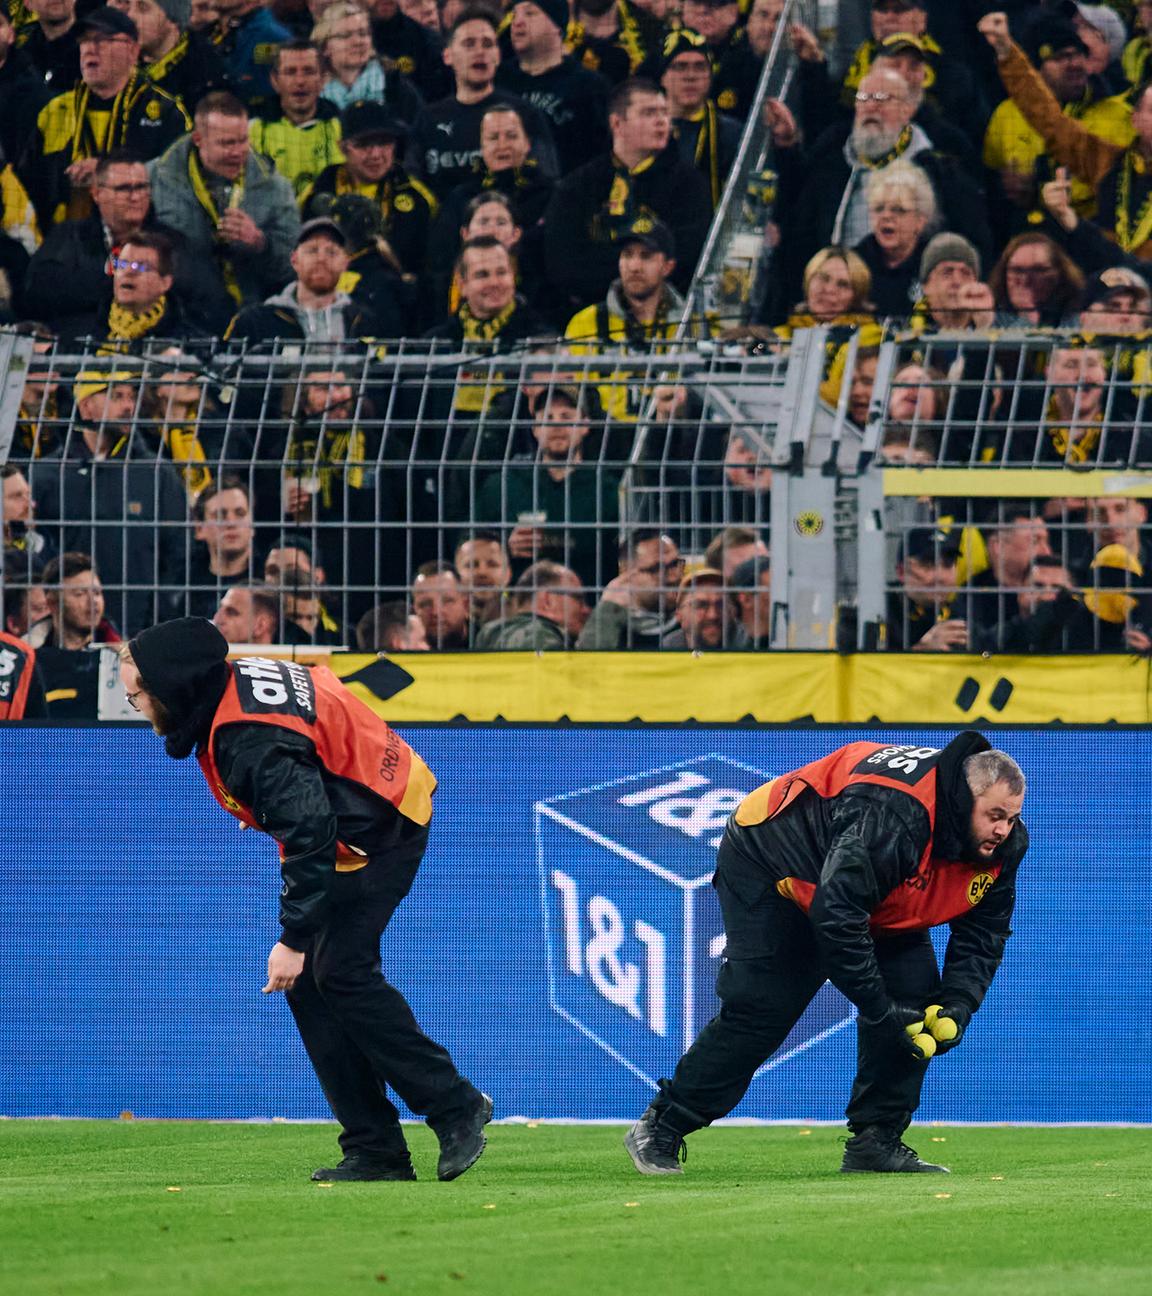 Stadionmitarbeiter sammeln Tennisbälle ein, die Dortmunds Fans auf das Spielfeld geworfen haben, um gegen Investoren in der DFL zu protestieren.